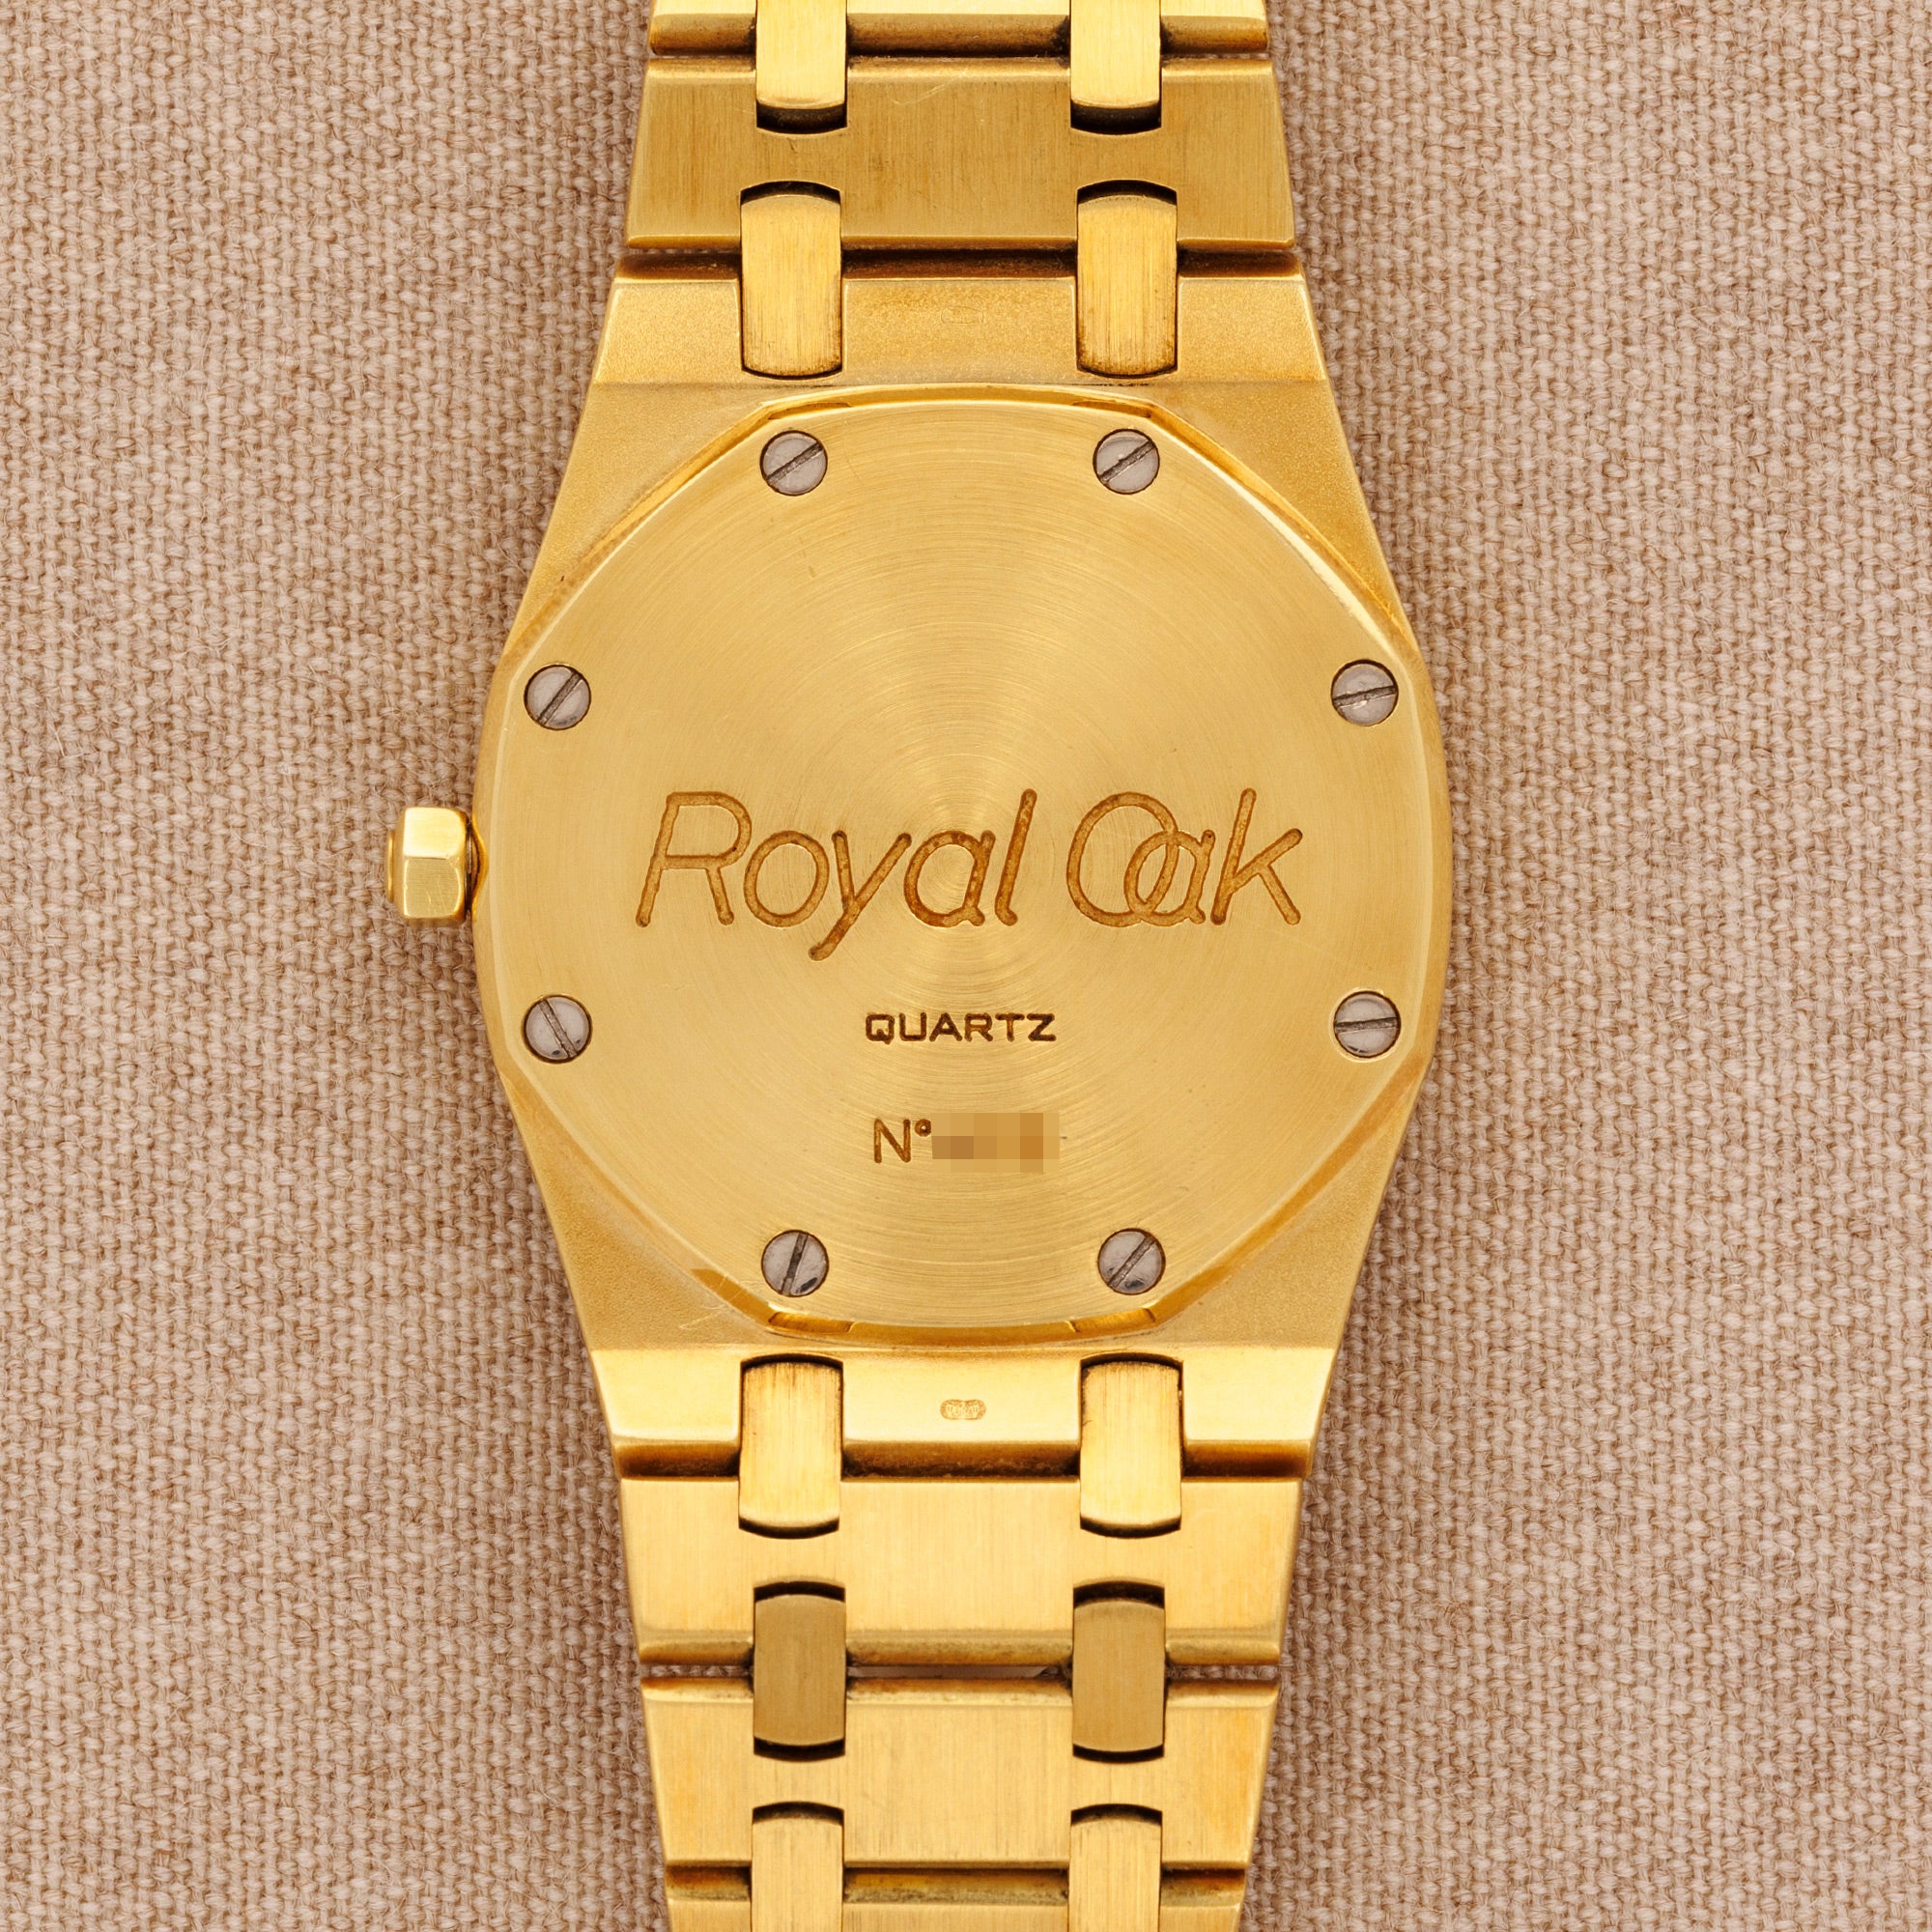 Audemars Piguet - Audemars Piguet Yellow Gold Royal Oak Ref. 56175 - The Keystone Watches